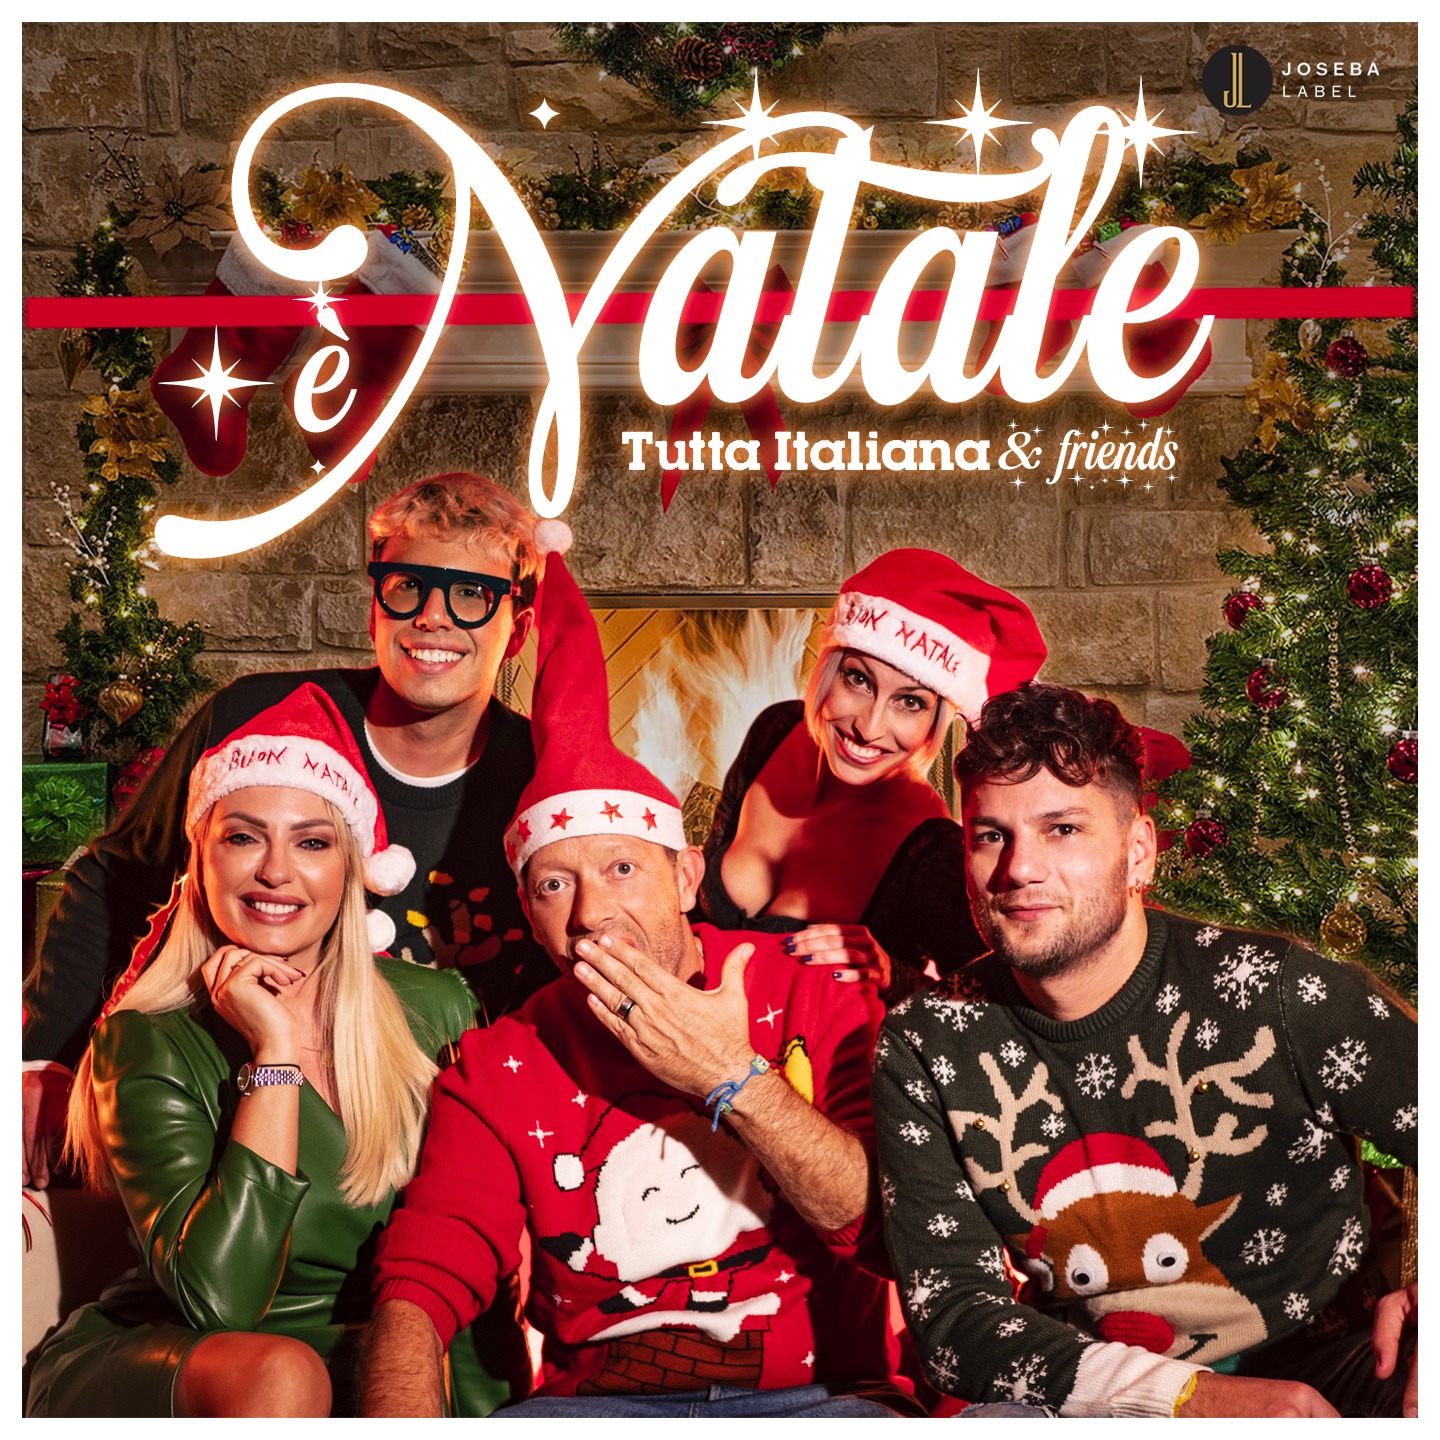 Al momento stai visualizzando “È NATALE”: esce la nuova canzone natalizia di Tutta Italiana & Friends feat. Luca Napolitano e Giovanni Segreti Bruno